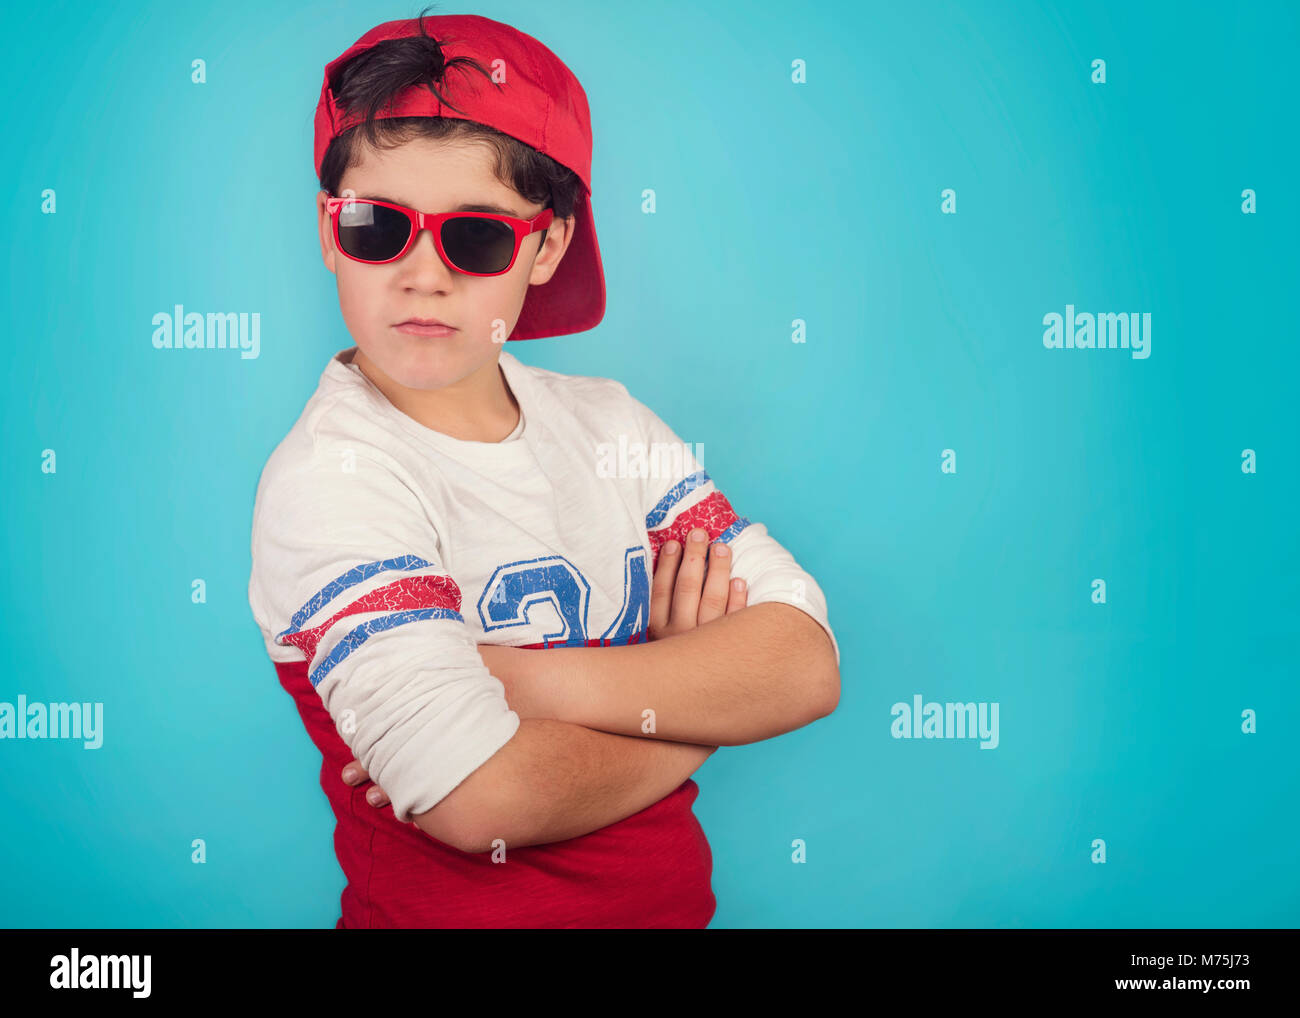 Ernsthafte junge mit Sonnenbrille auf blauem Hintergrund Stockfoto